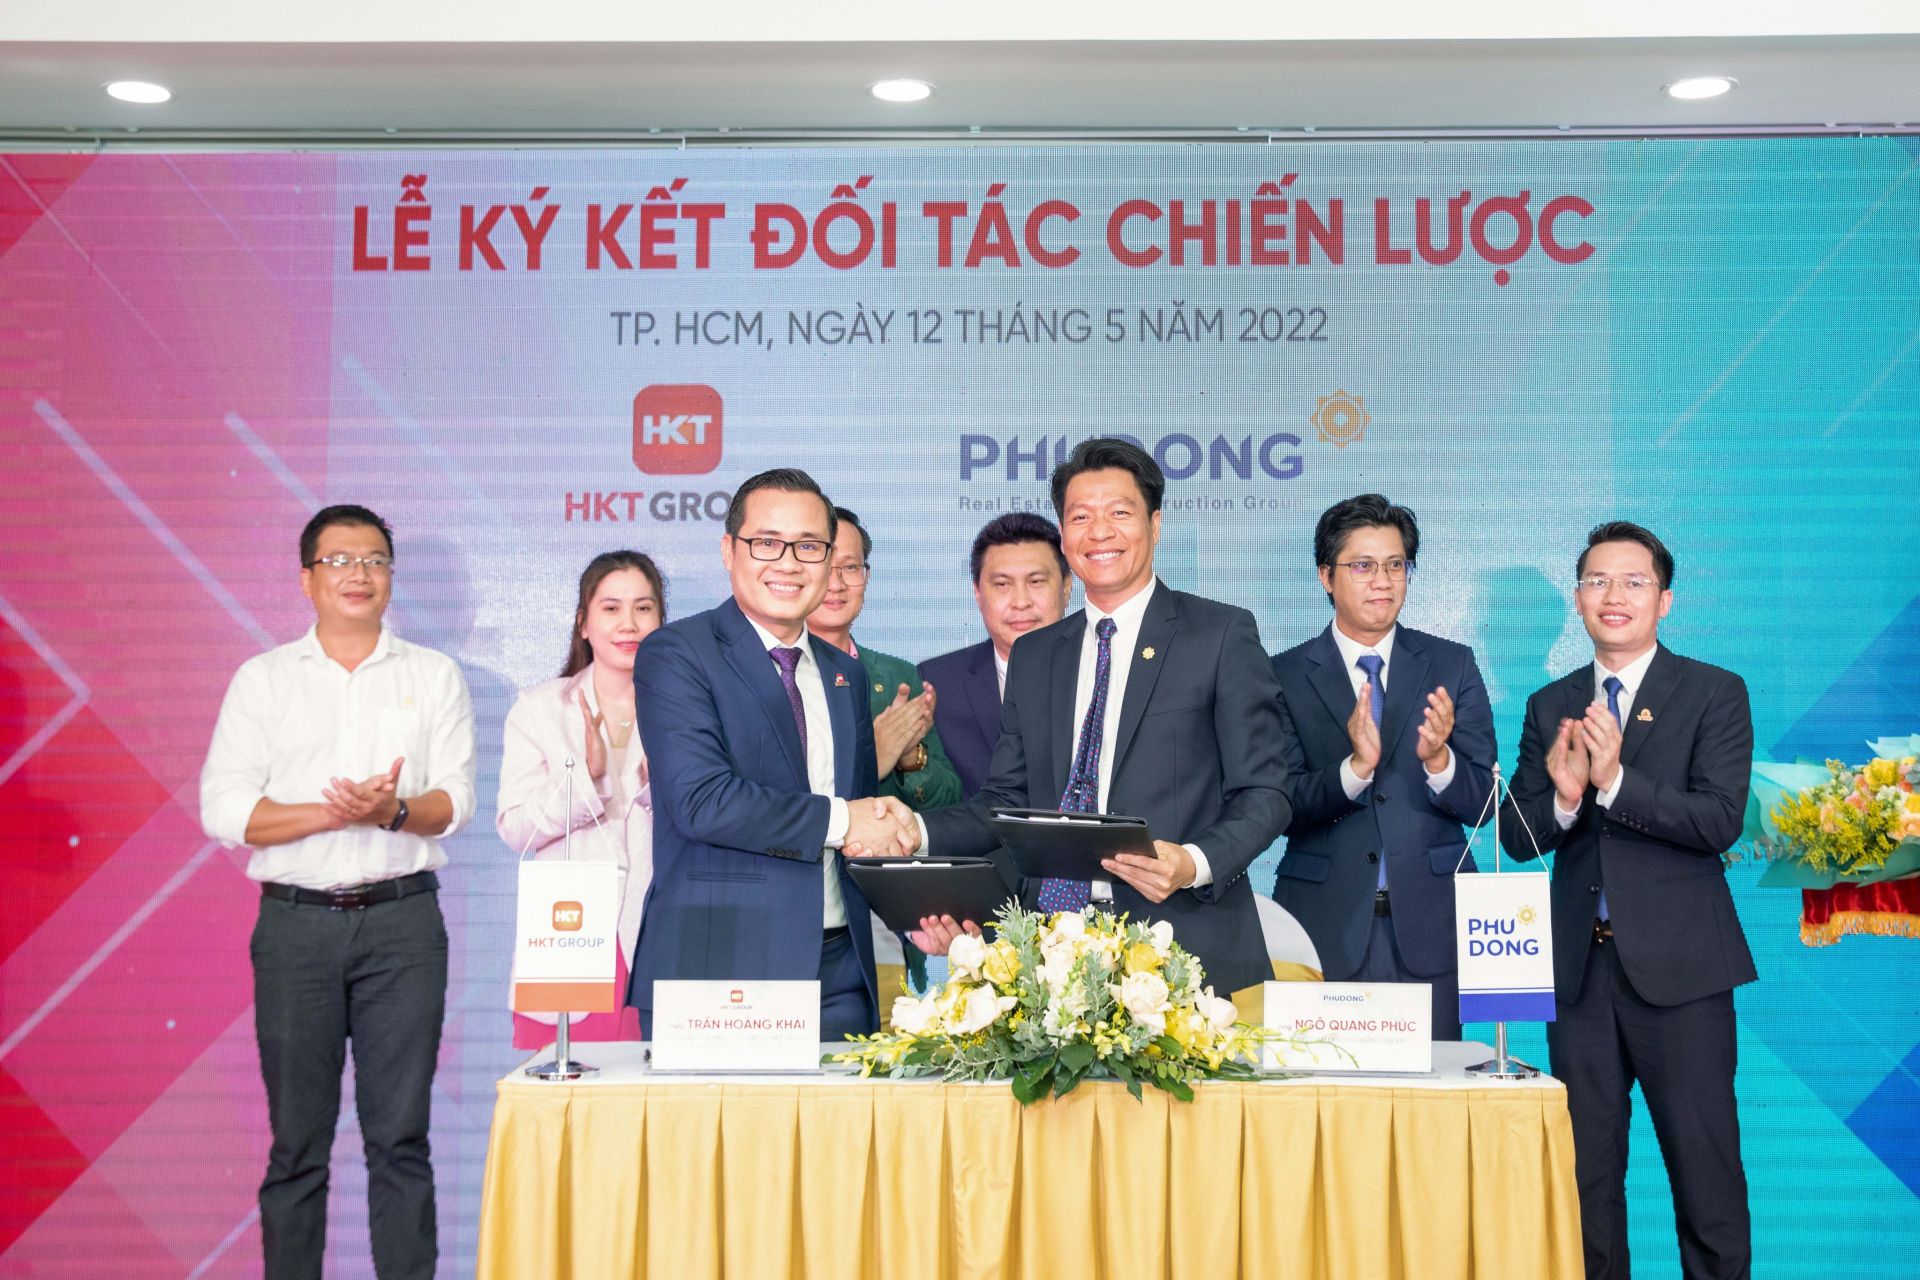 Ông Trần Hoàng Khải - Tổng Giám đốc HKT GROUP và ông Ngô Quang Phúc - Tổng Giám đốc Phú Đông Group thực hiện nghi thức ký kết